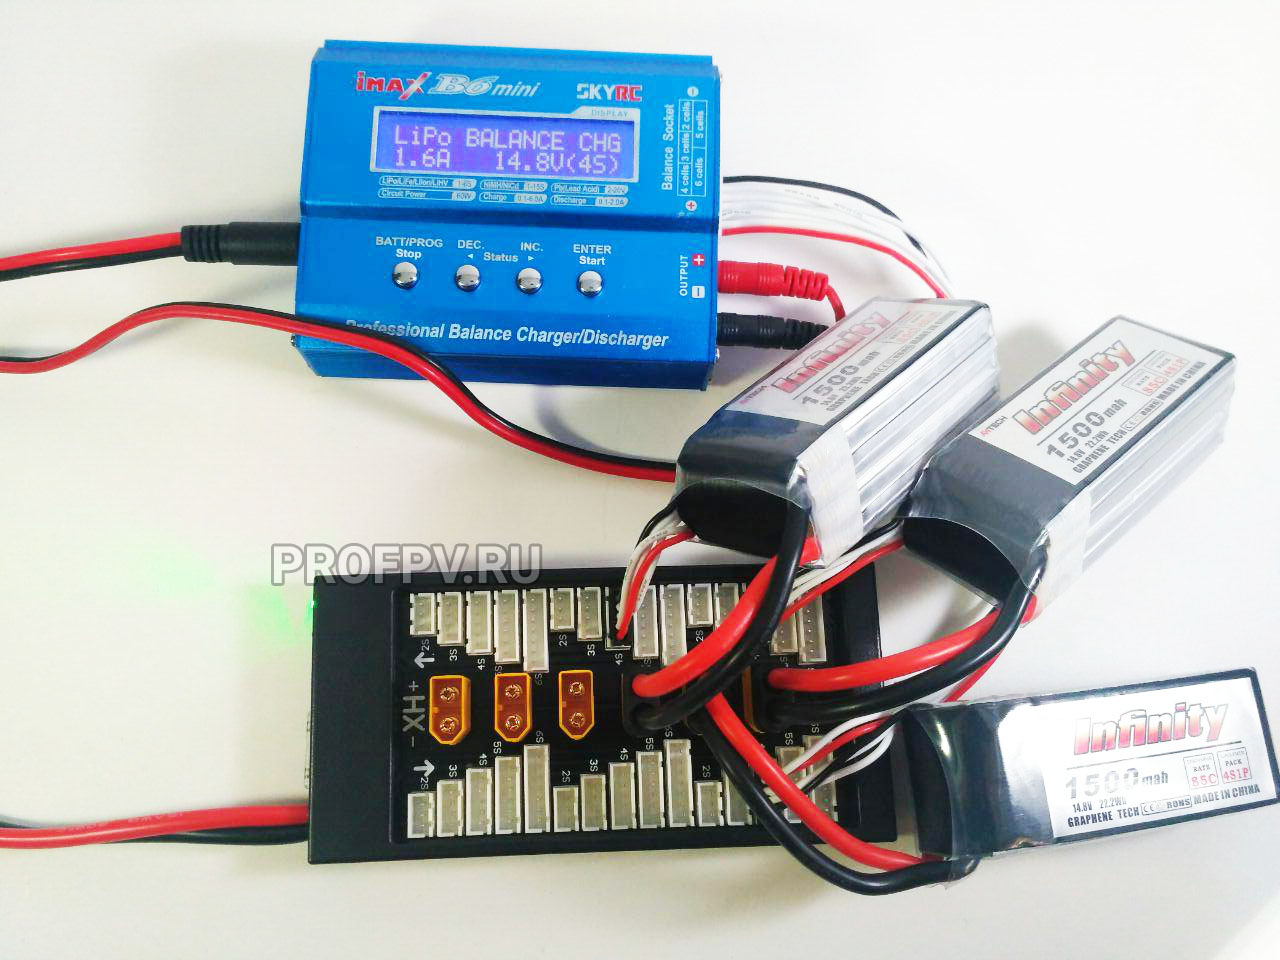 Параллельная зарядка LiPo, как зарядить сразу несколько аккумуляторов